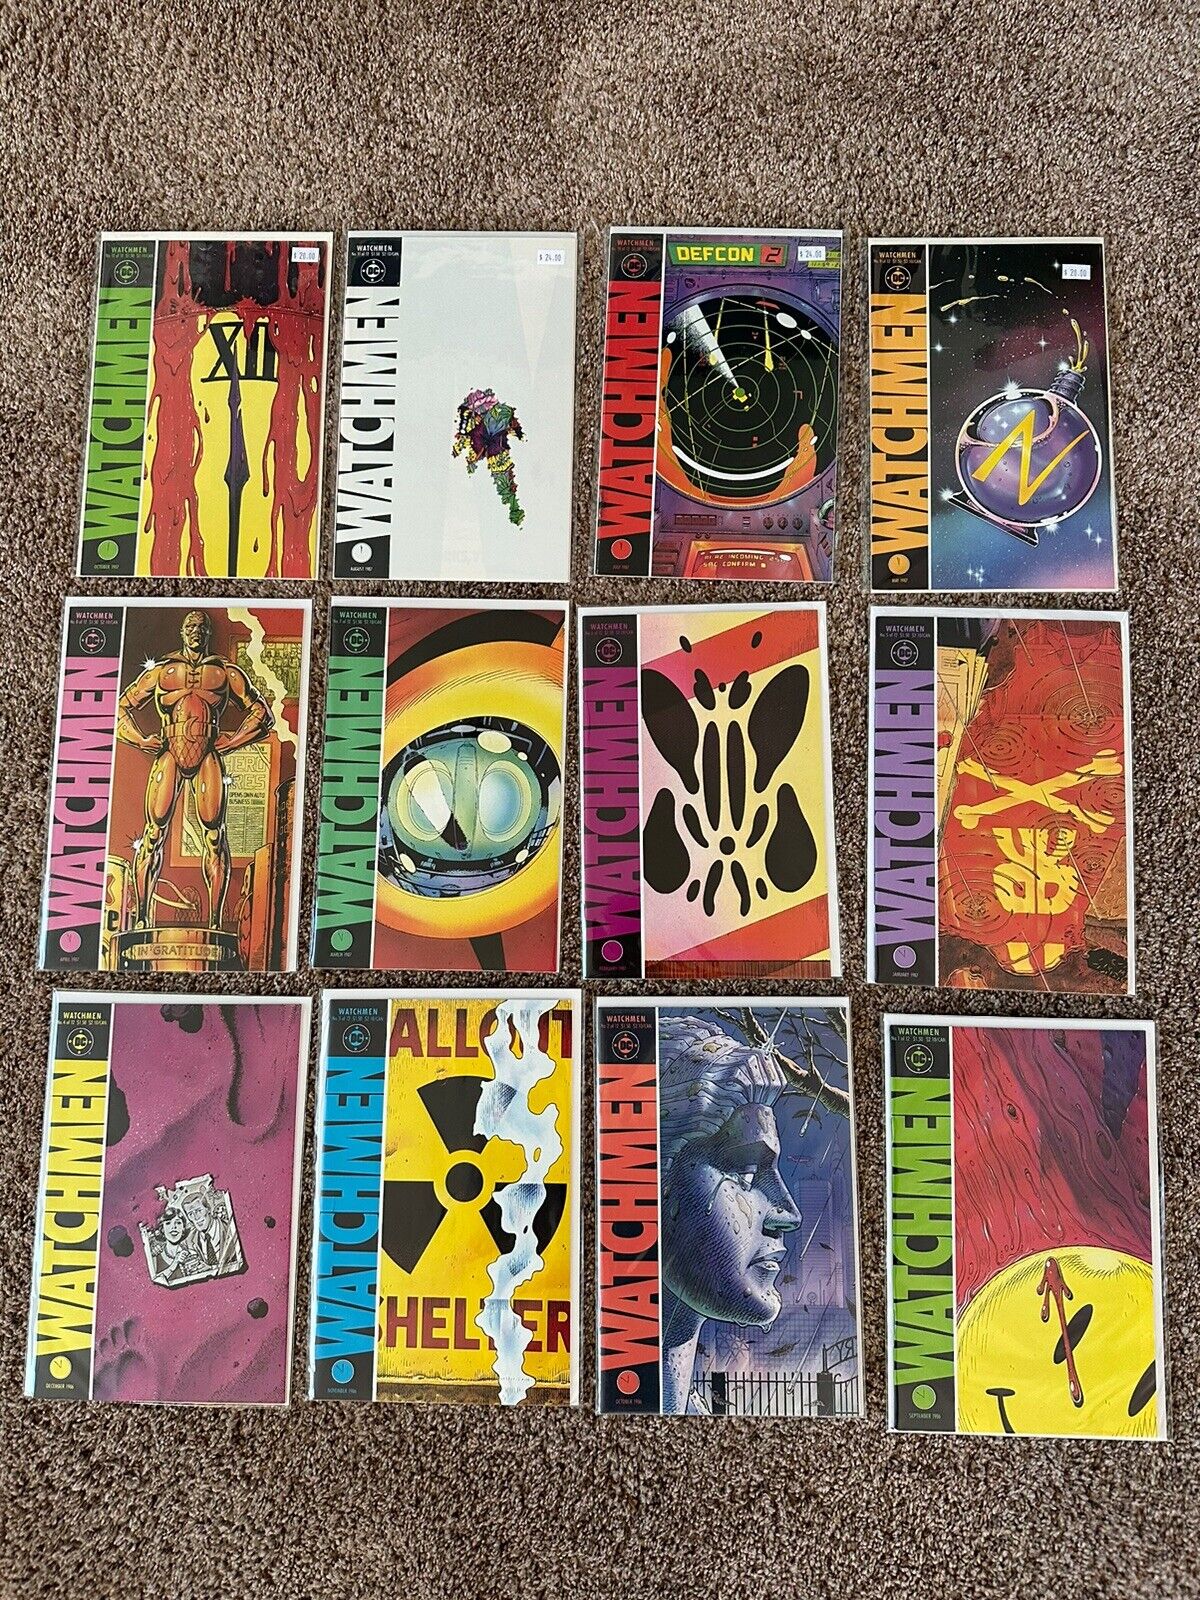 Watchmen #1,2,3,4,5,6,7,8,9,10,11,12 (1986) #1-12 Lot NM-/NM